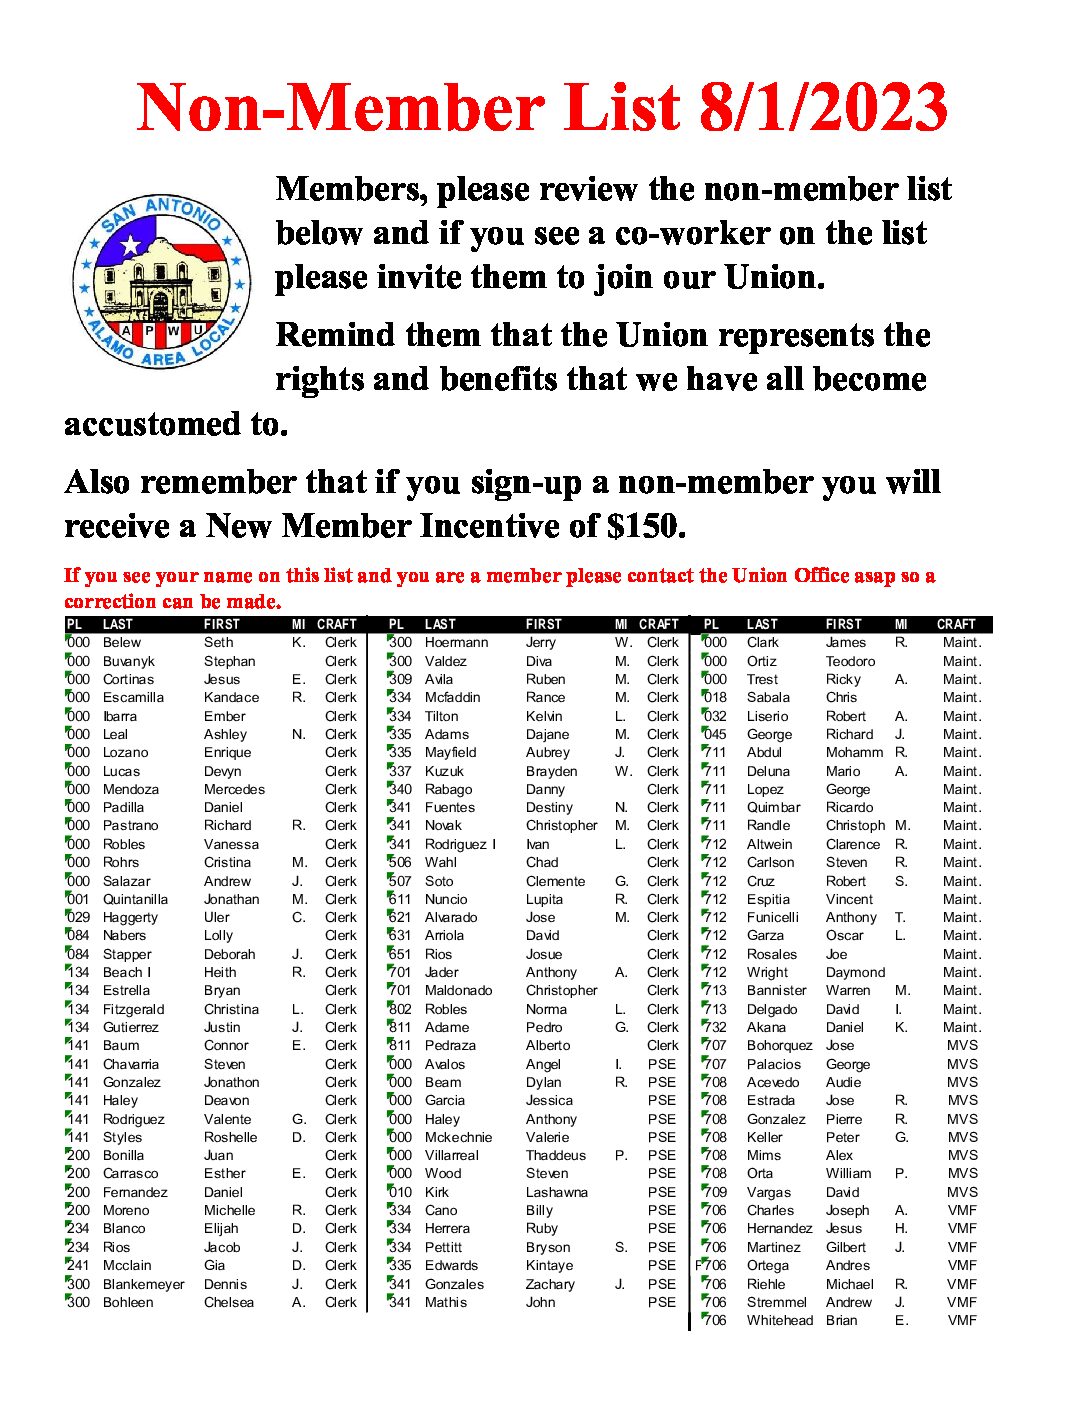 Non-Member List 8/1/2023 - 